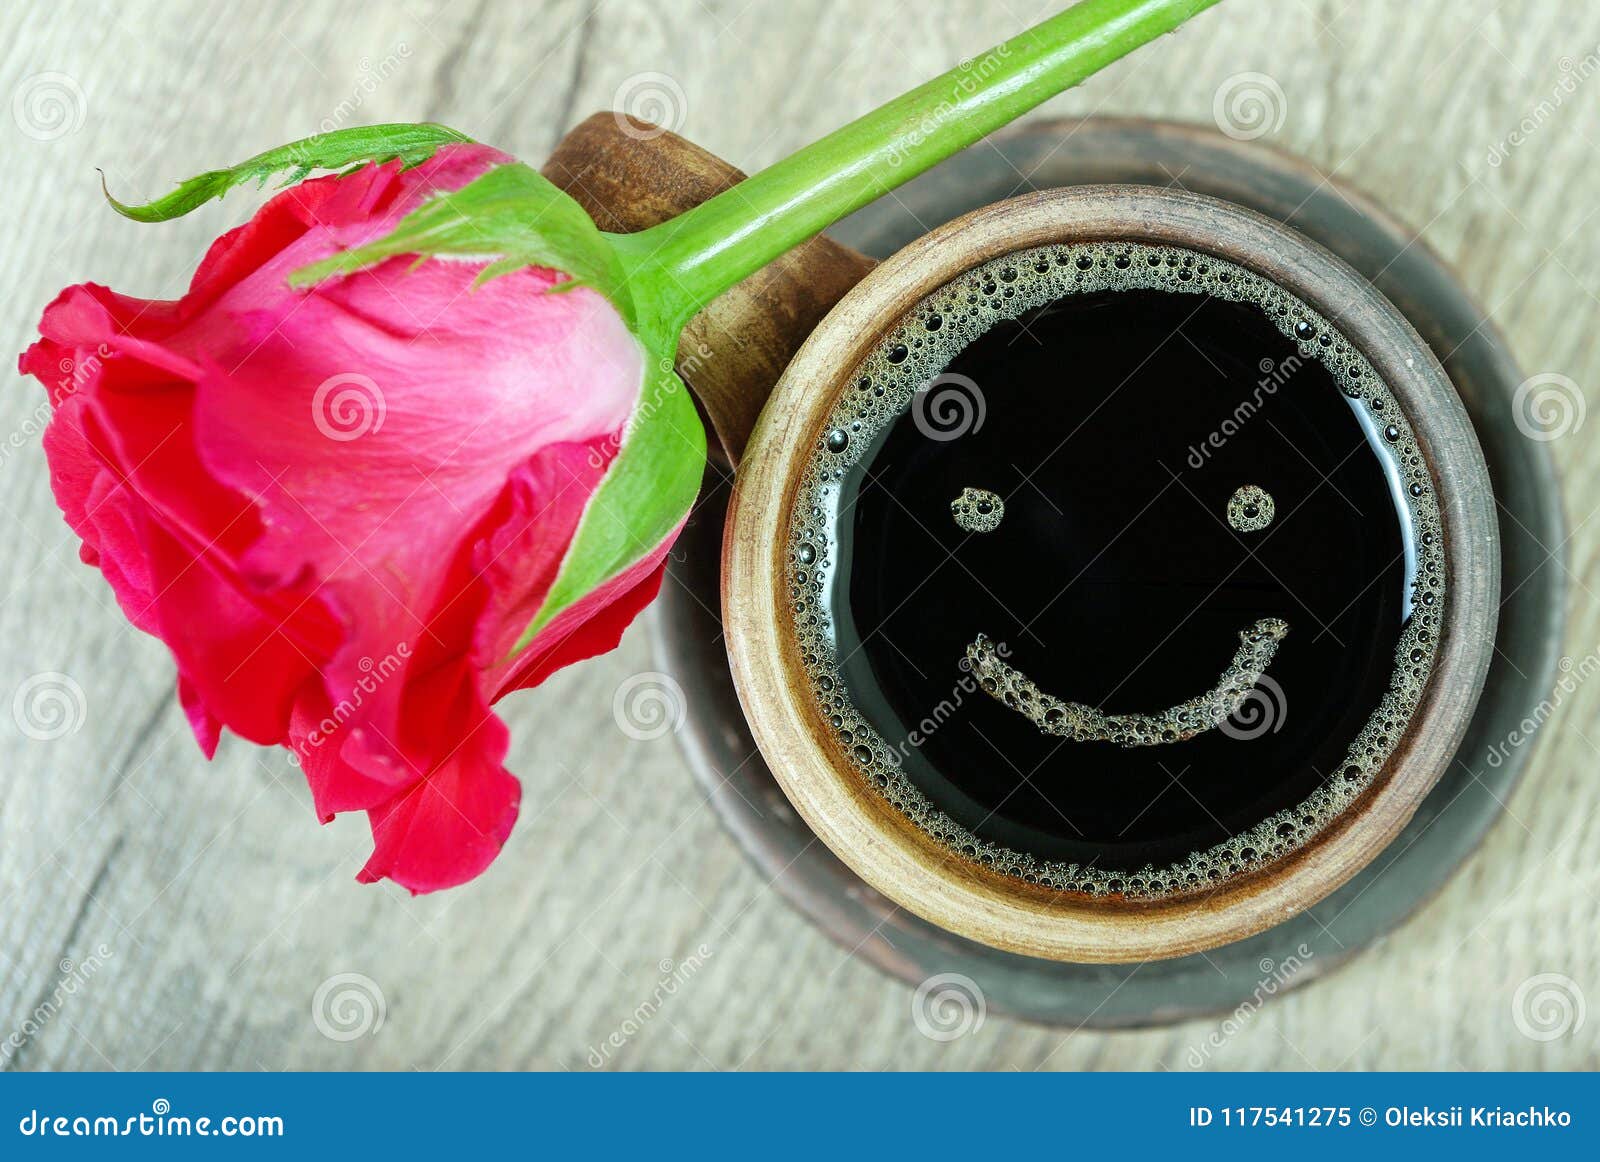 Bom Dia Uma Xícara De Café E Uma Rosa Vermelha Em Uma Tabela De Madeira  Sorriso De Um Dia Feliz Imagem de Stock - Imagem de fundo, preto: 117541275